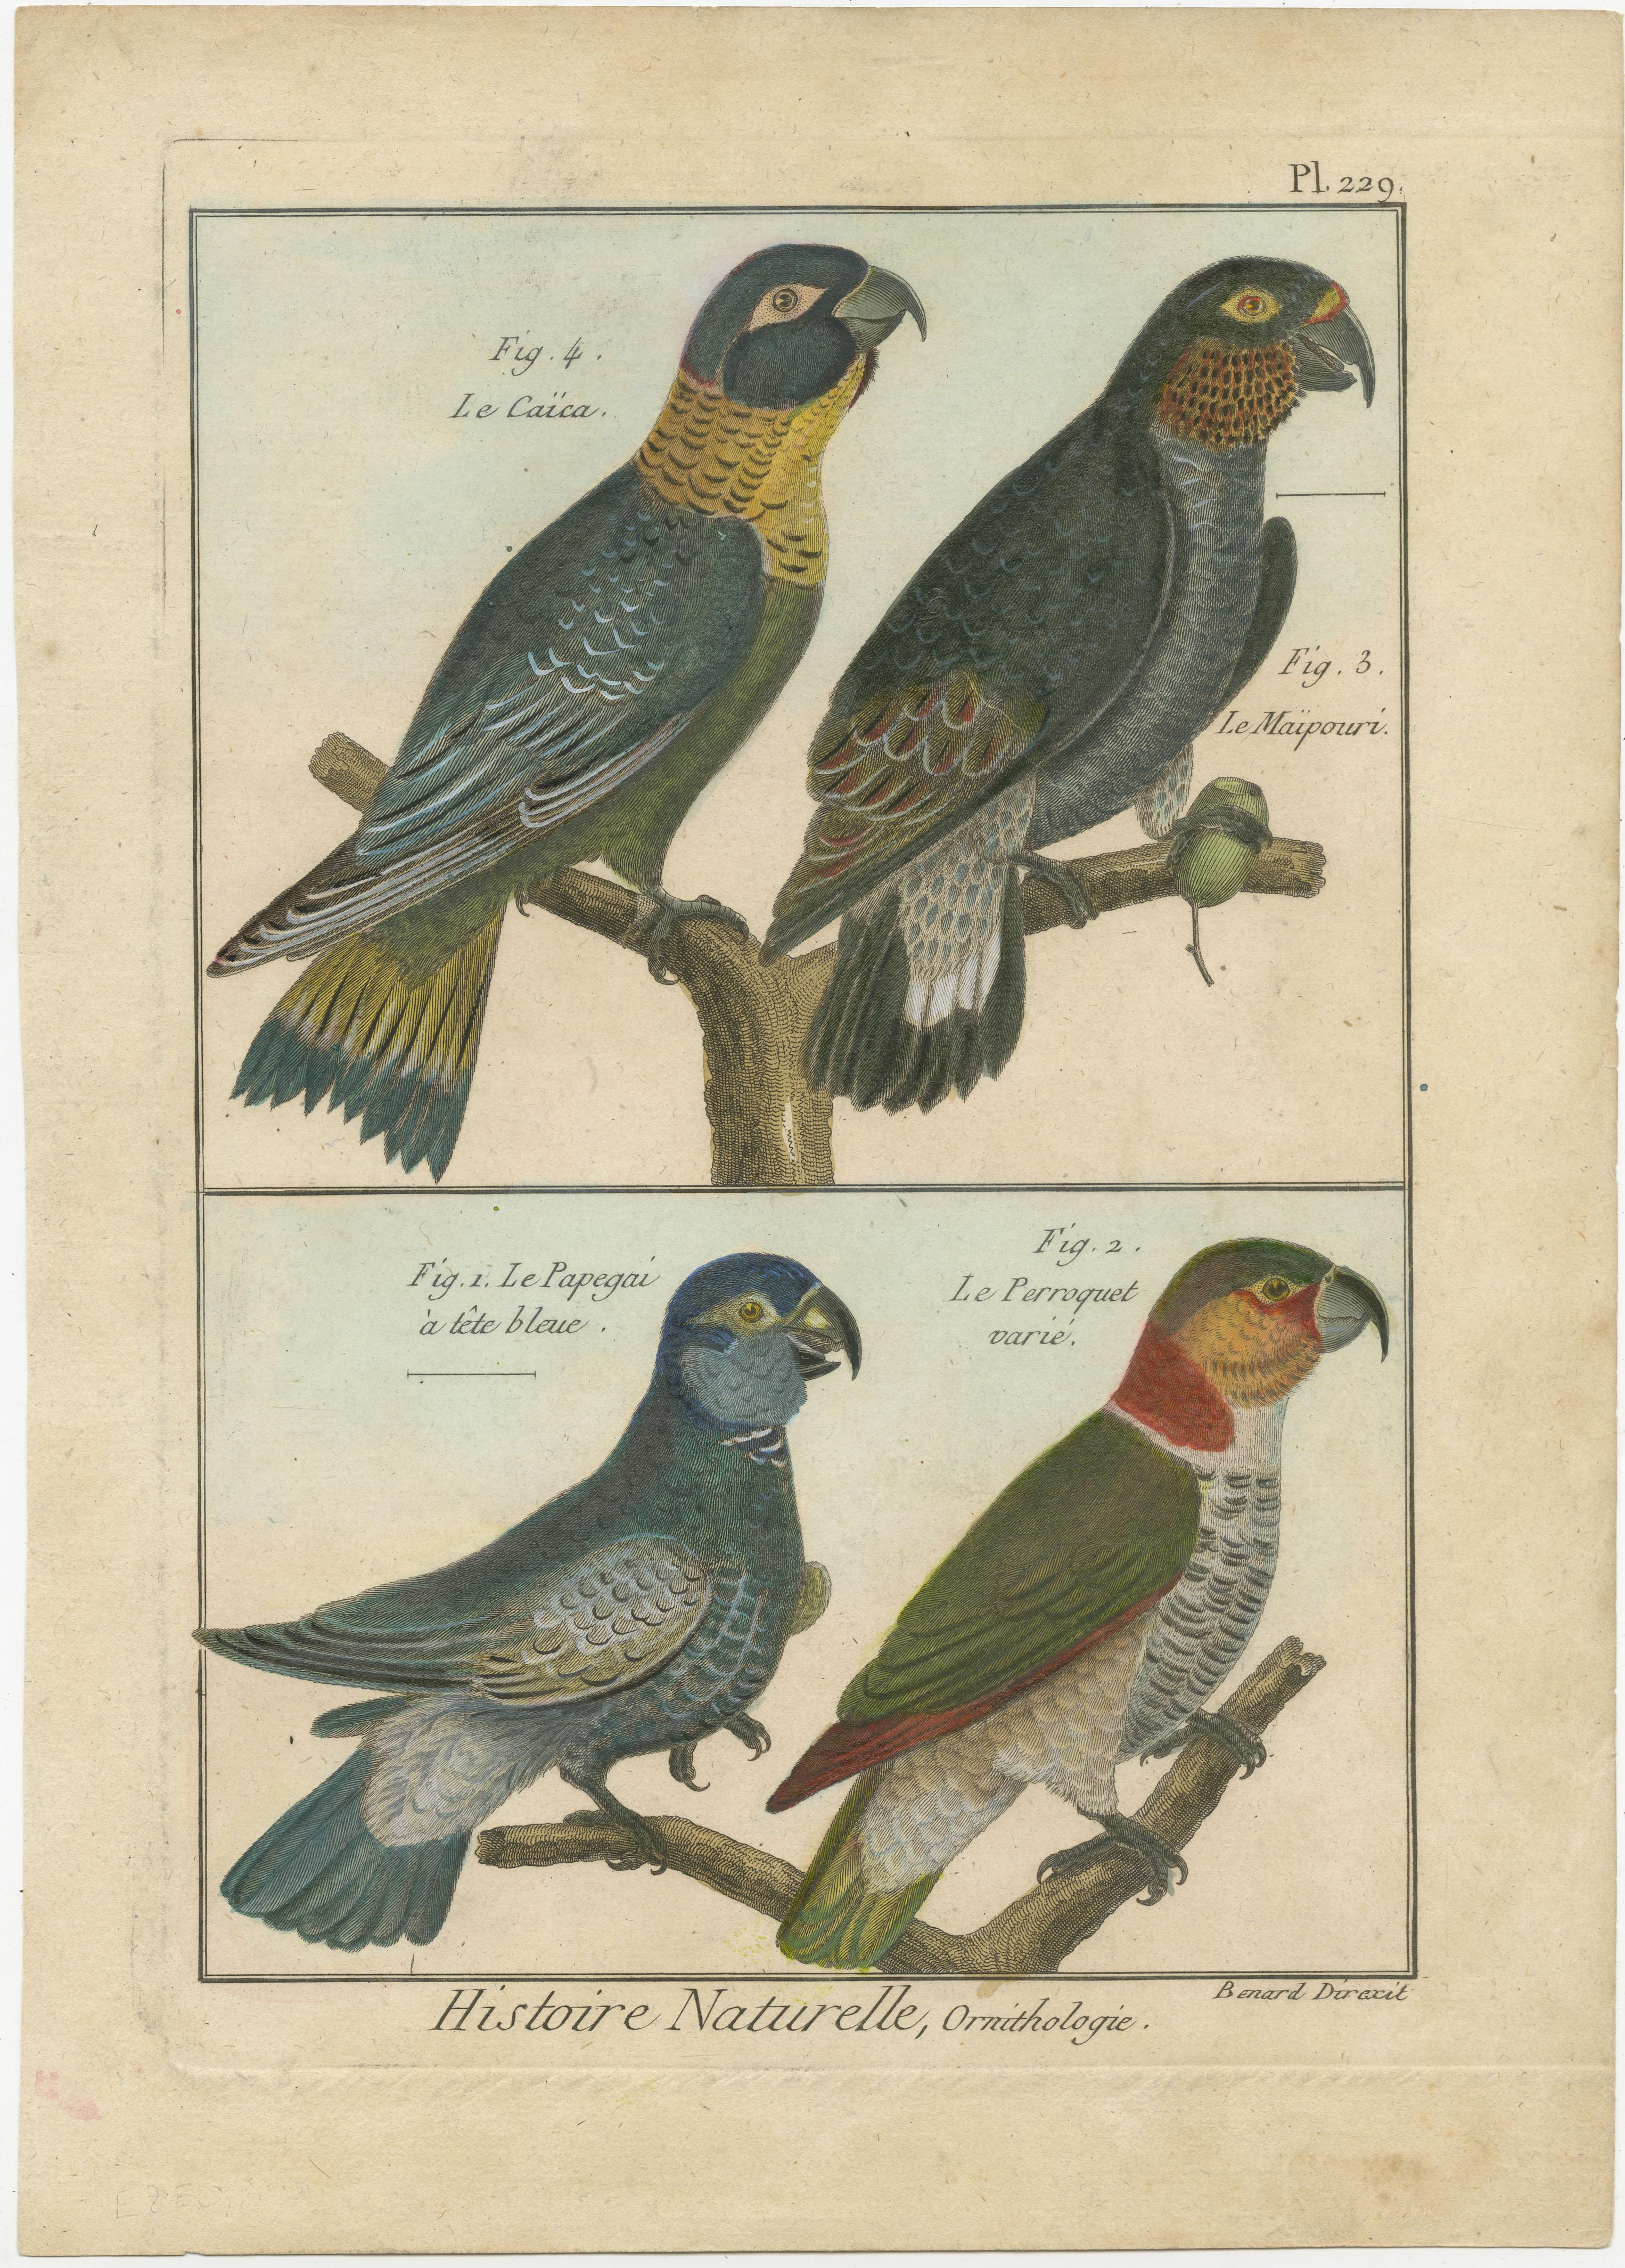 Eine authentische, perfekte und helle, ursprünglich handkolorierte Illustration von 4 Papageien, auf Pergamentpapier (Kupferstich). Es hat einen feinen Glanz durch das authentisch aufgetragene Eigelb als Firnis. Der Künstler ist Robert Bernard